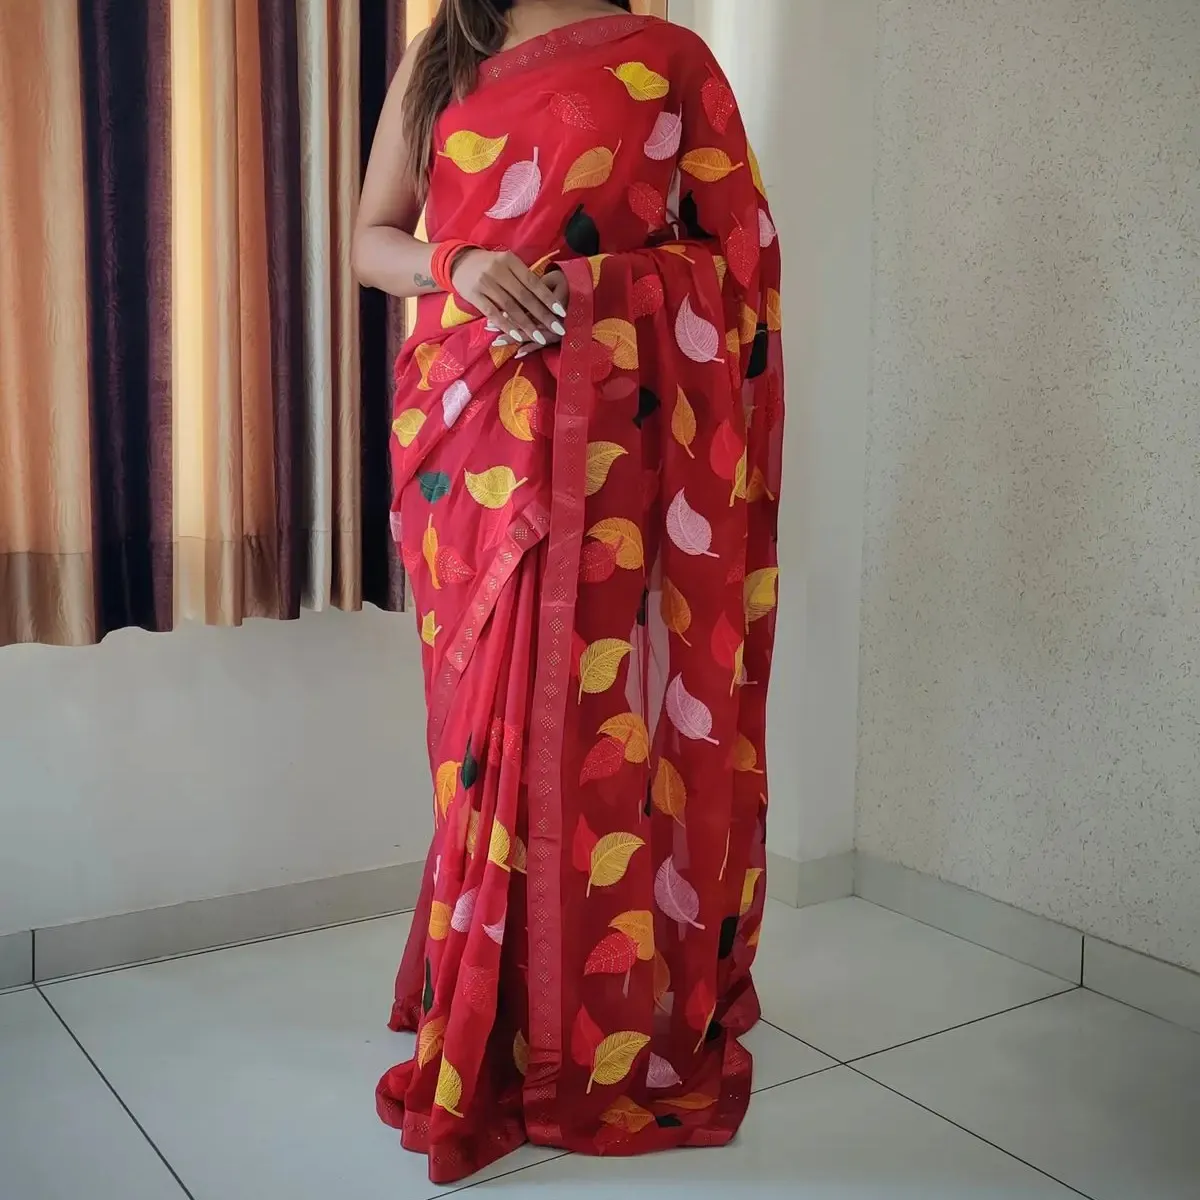 FULPARI pakaian wanita India blus saree cetak batas renda pakaian pesta Sari Harga rendah murah wanita India terbaru garmen etnik